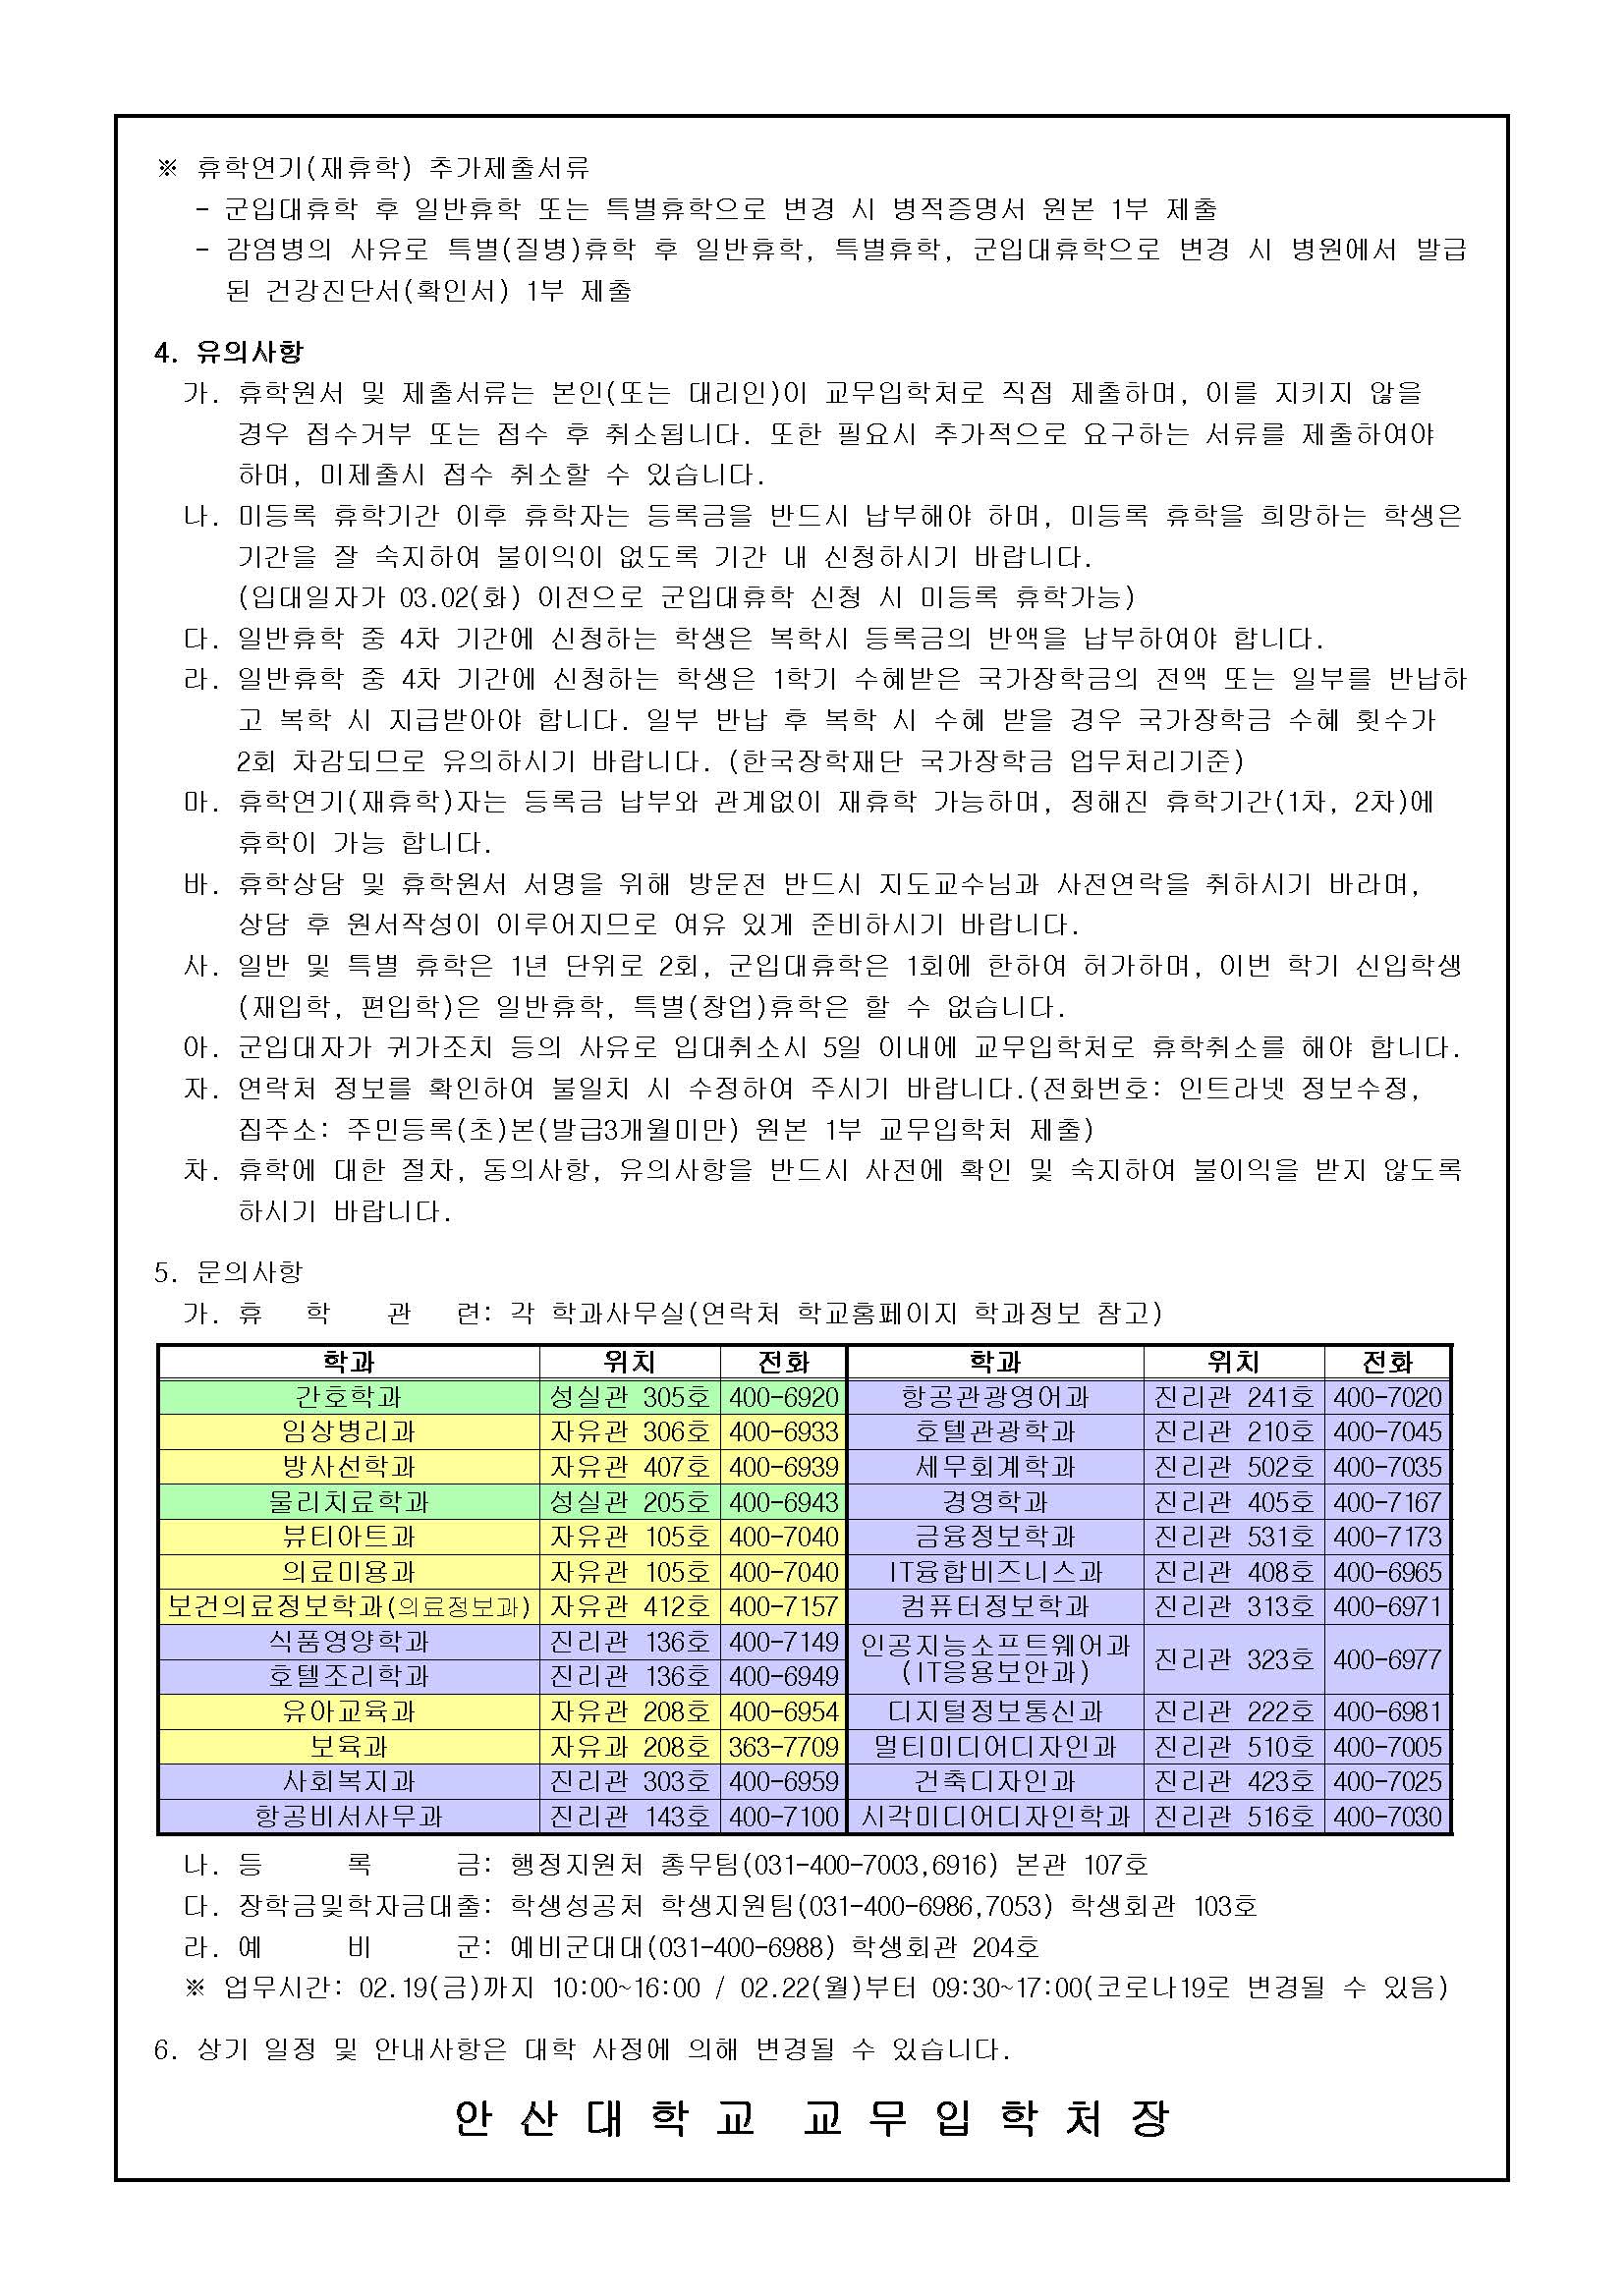 2021-1학기 휴학 안내-공지사항_페이지_2.jpg